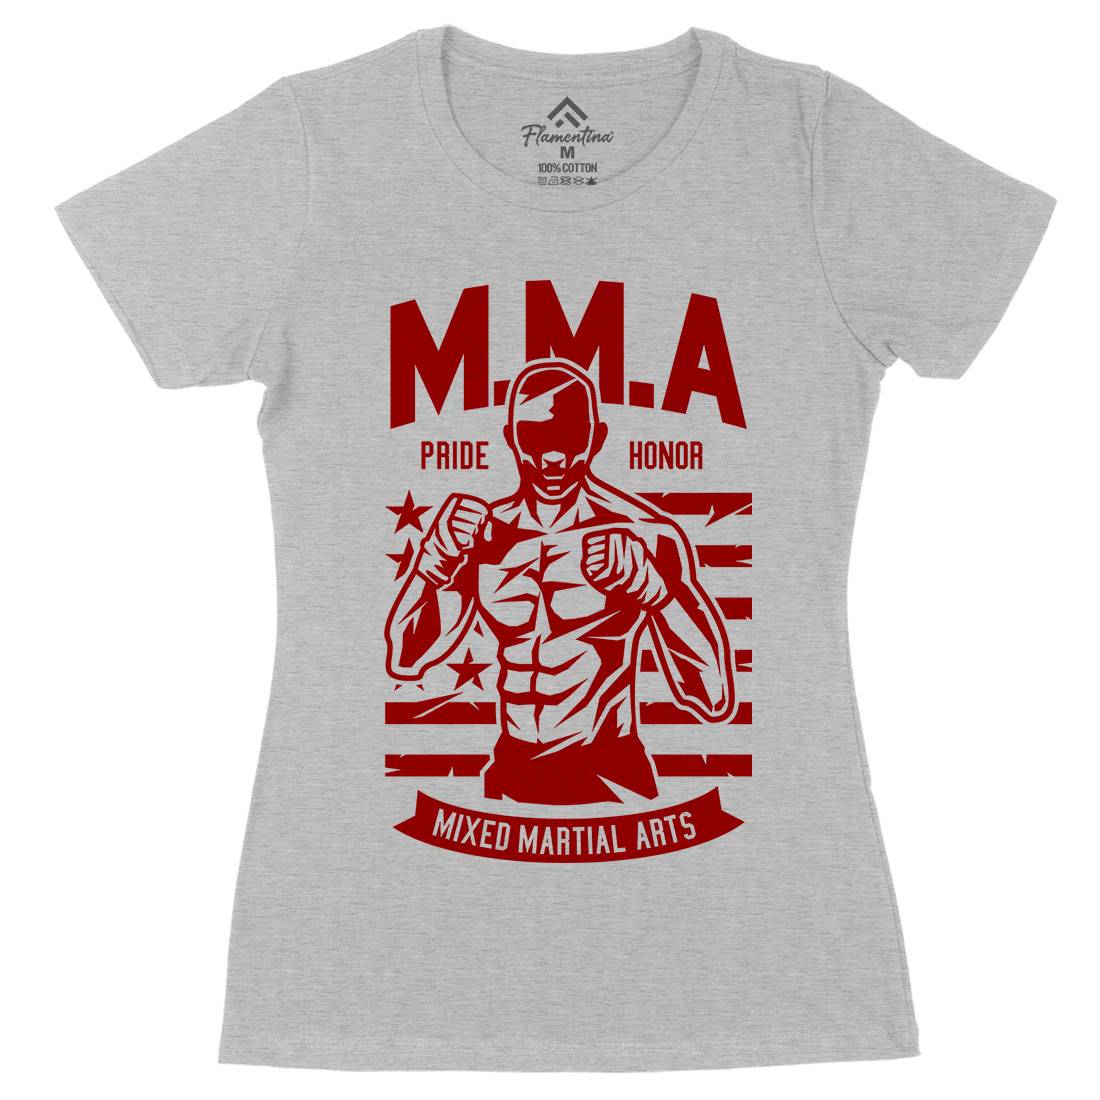 Mma Fighter Womens Organic Crew Neck T-Shirt Sport A252